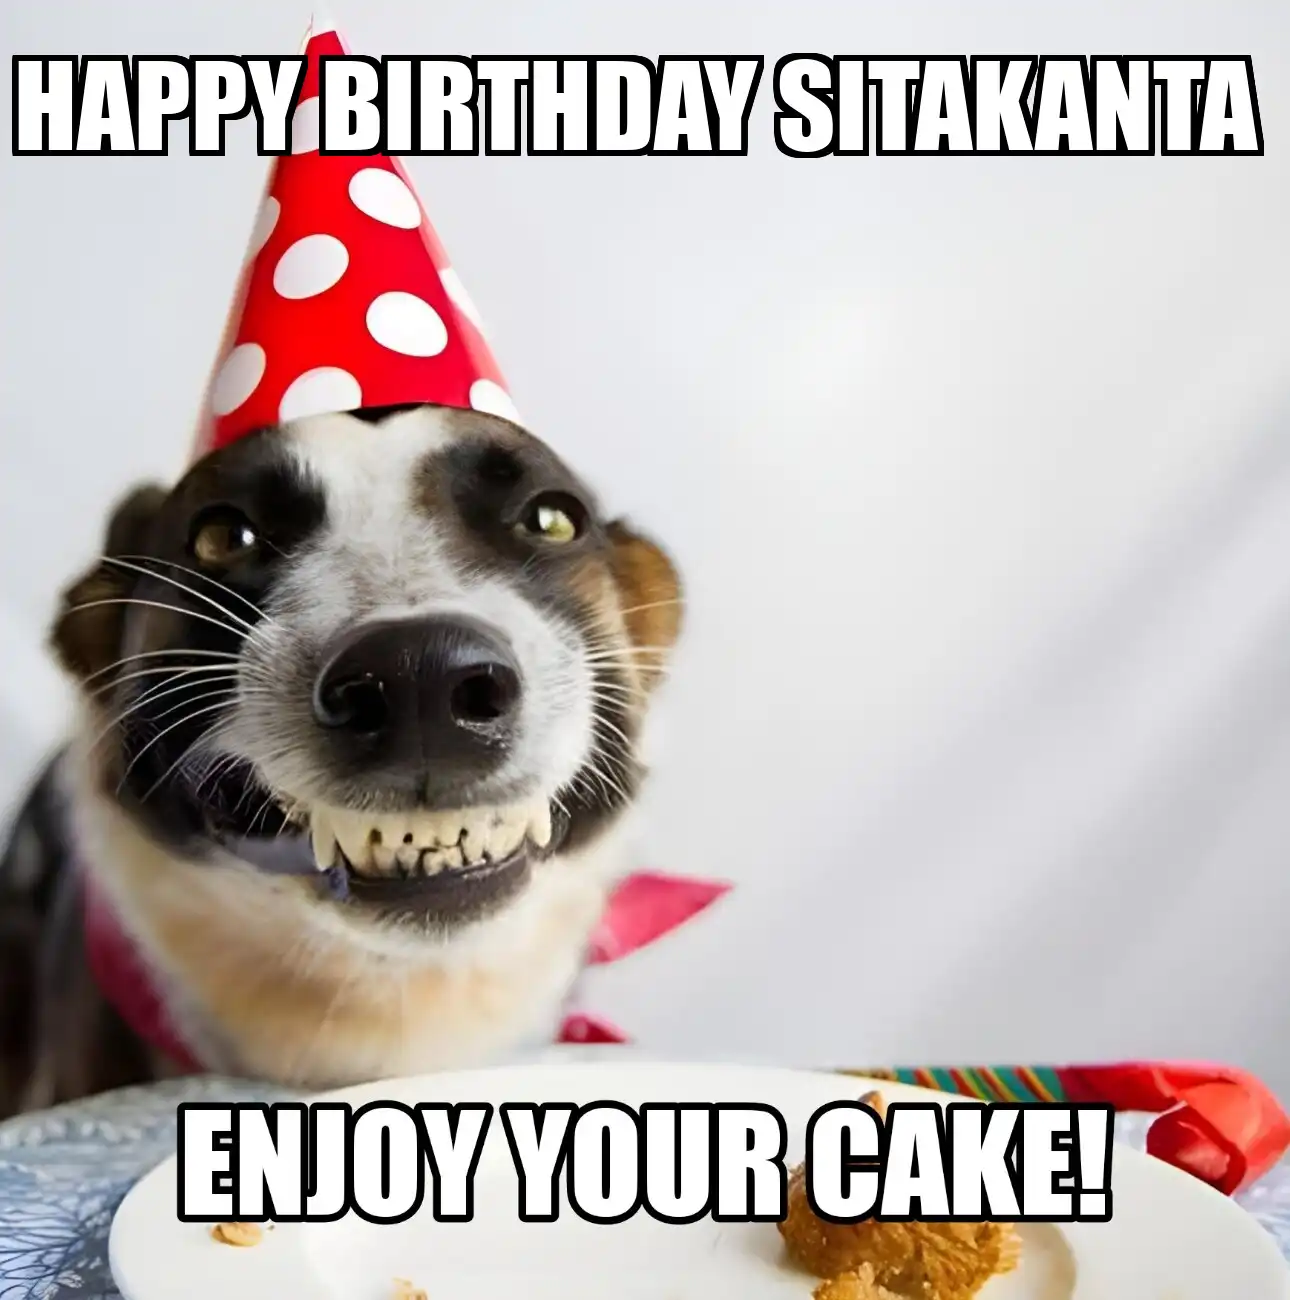 Happy Birthday Sitakanta Enjoy Your Cake Dog Meme